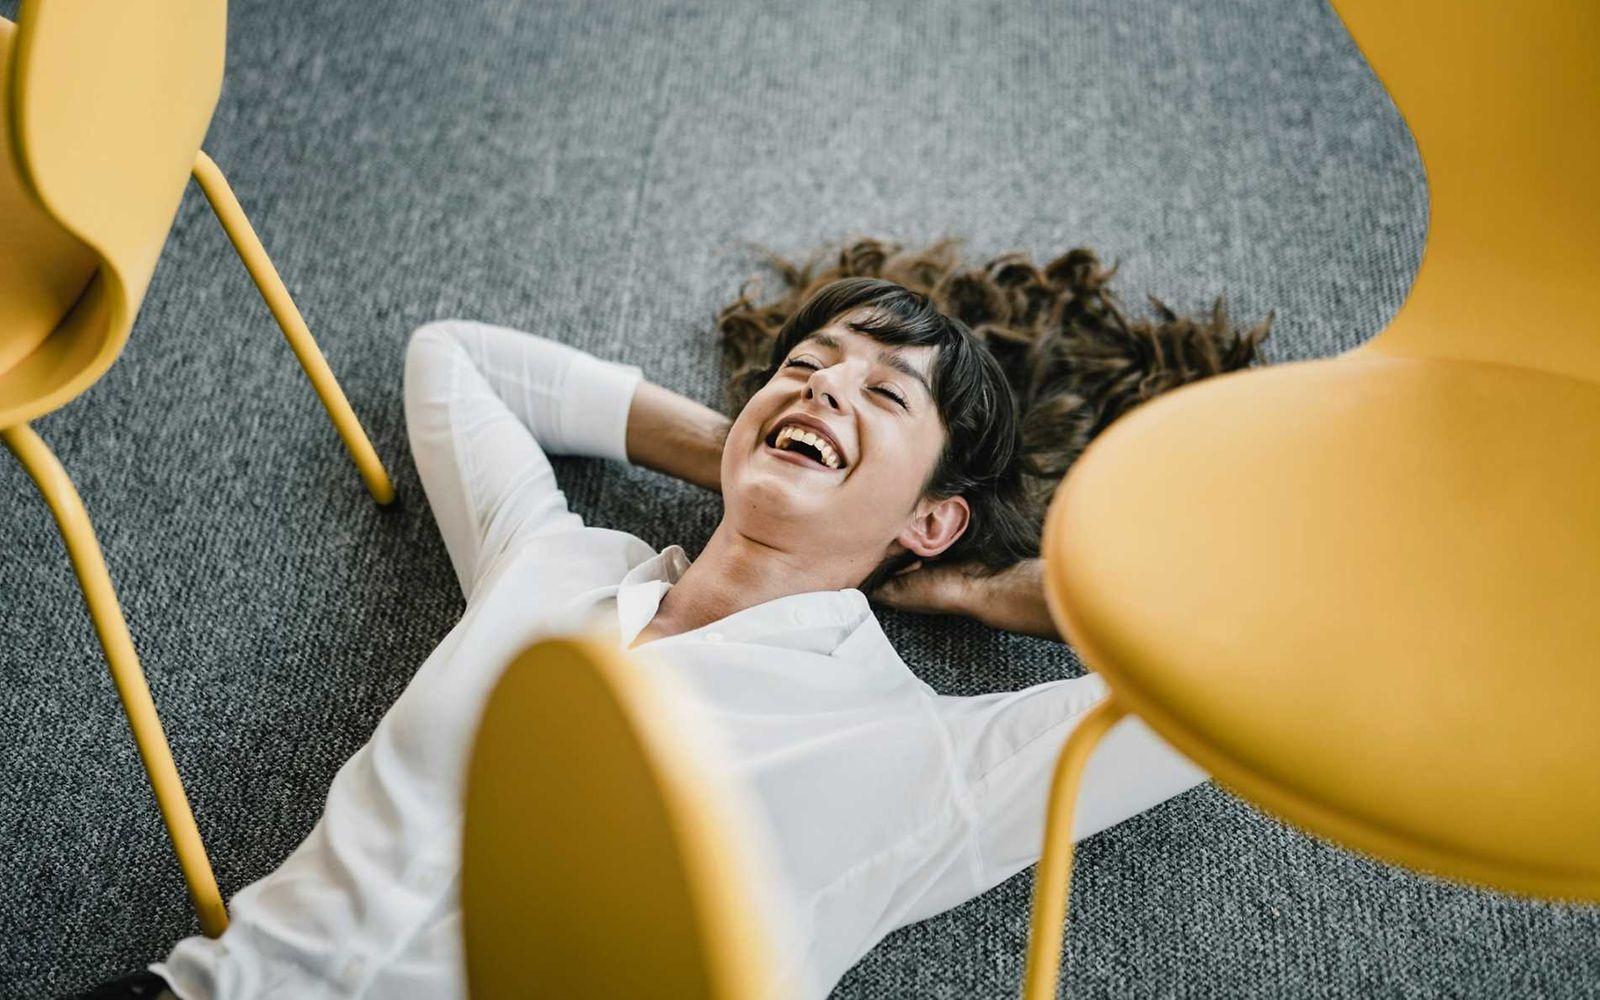 Bild: Frau mit weißer Bluse liegt lächelnd auf dem Fußboden im Büro und wirkt entspannt.